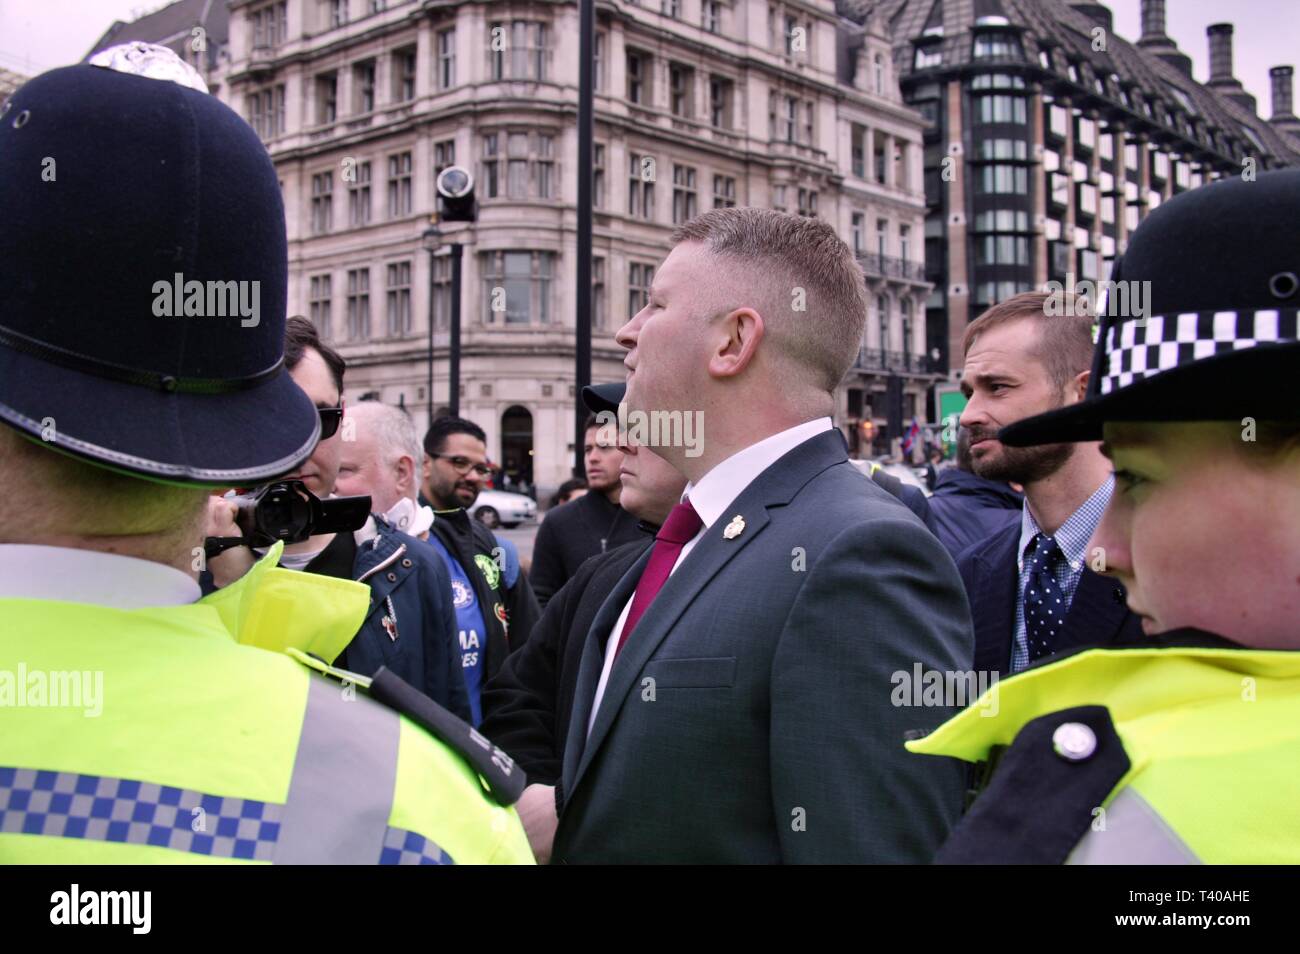 Londra, Regno Unito. Il 12 aprile 2019, Paul Golding affronta i membri del lavoratore socialista al di fuori della sede del Parlamento. © Martin Foskett/Knelstrom Ltd Foto Stock